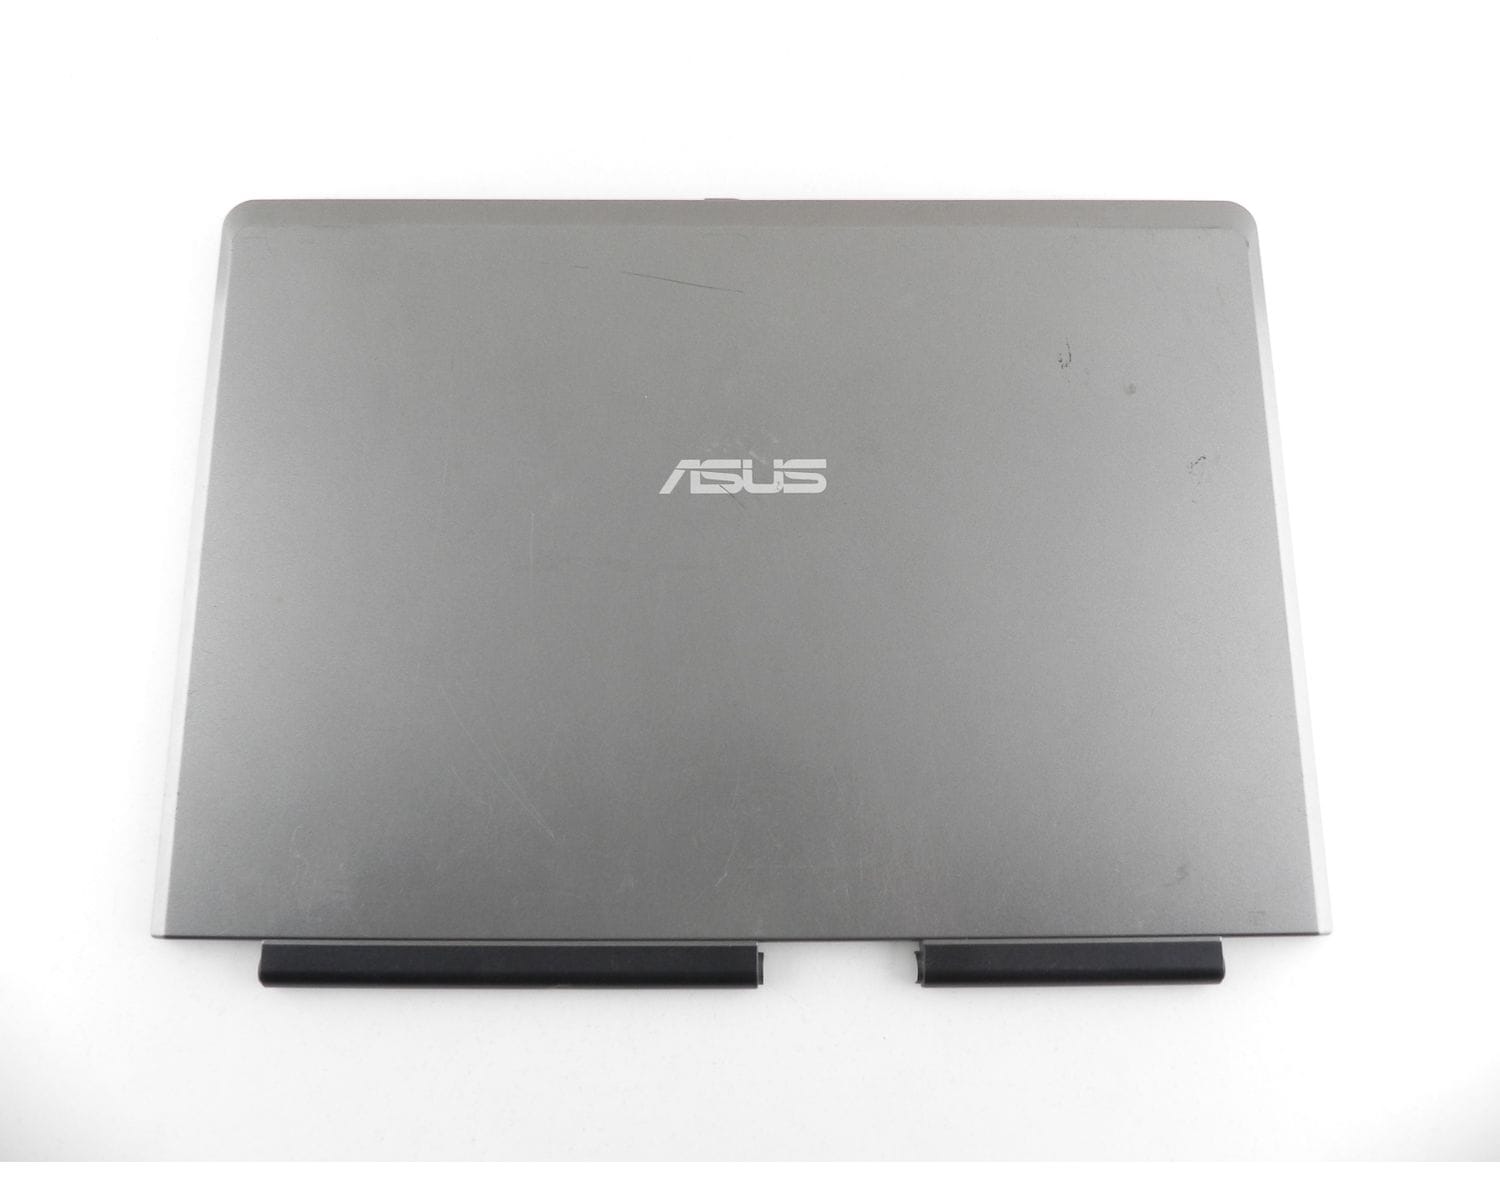 Asus X51rl Ноутбук Купить